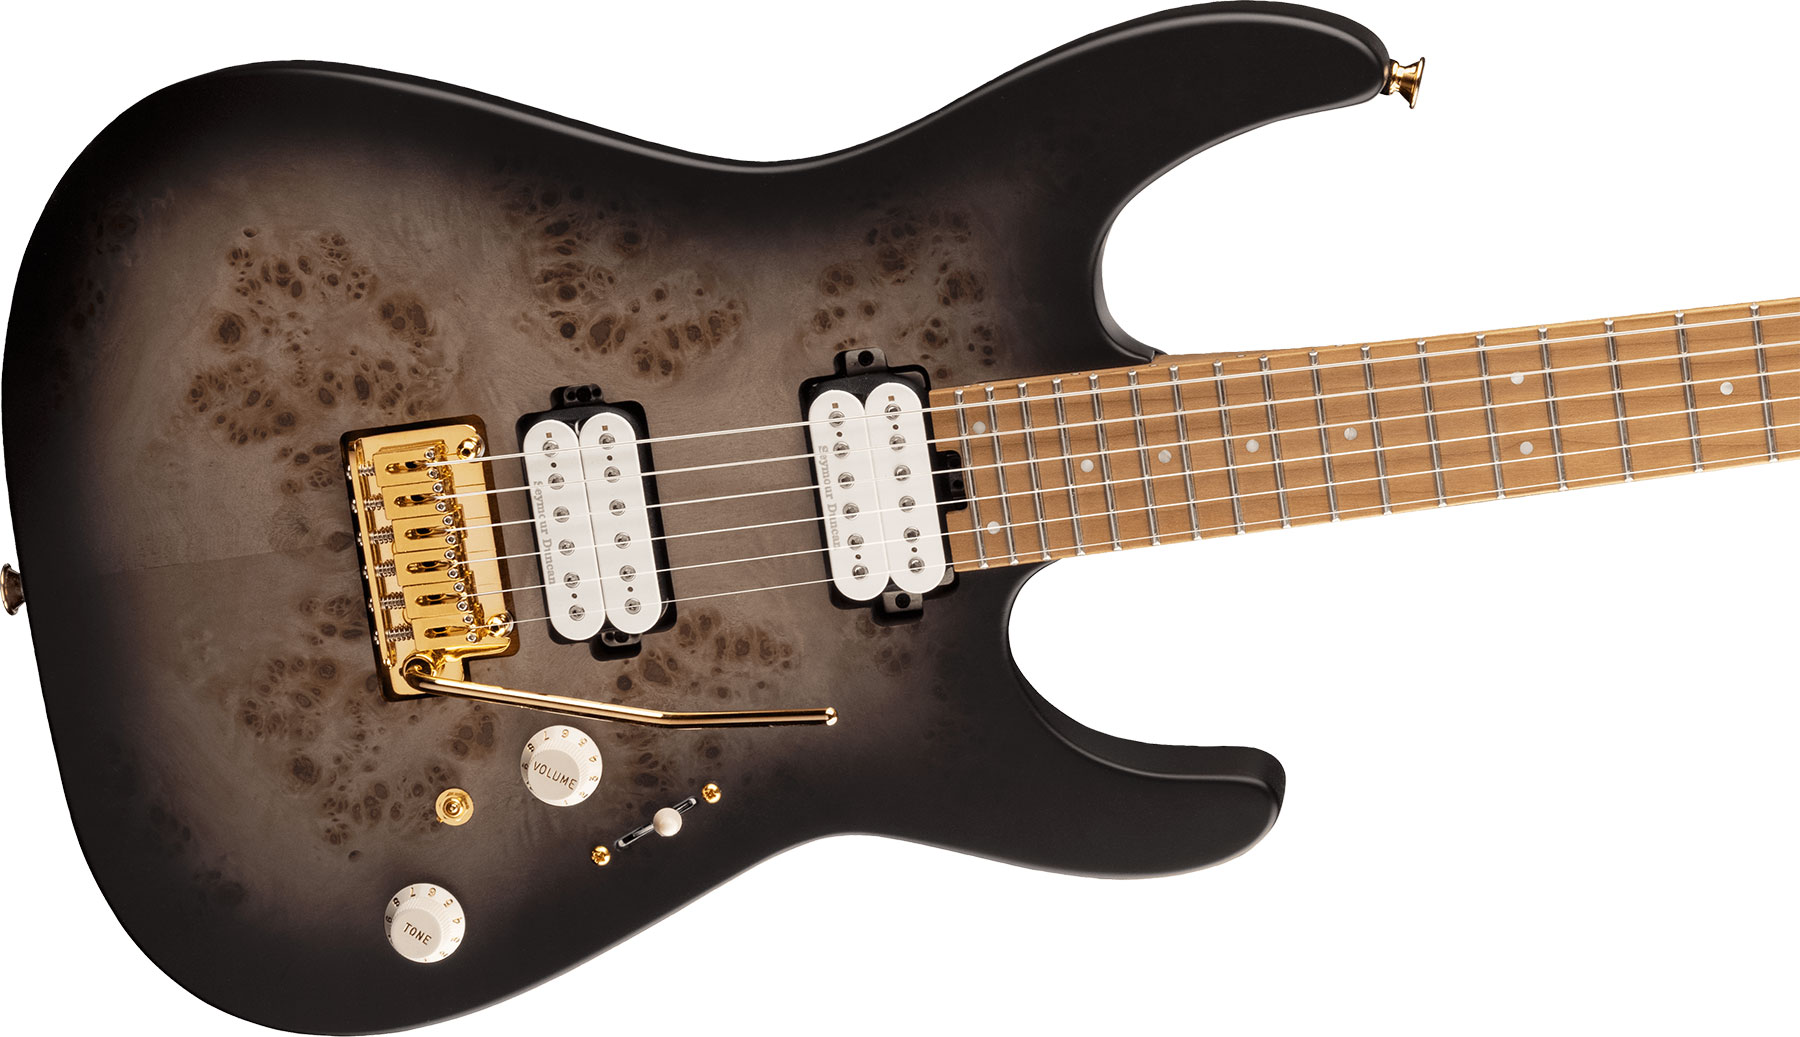 Charvel Dinky Dk24 Hh 2pt Cm Poplar Burl Pro-mod 2h Seymour Duncan Trem Mn - Transparent Black Burst - Elektrische gitaar in Str-vorm - Variation 2